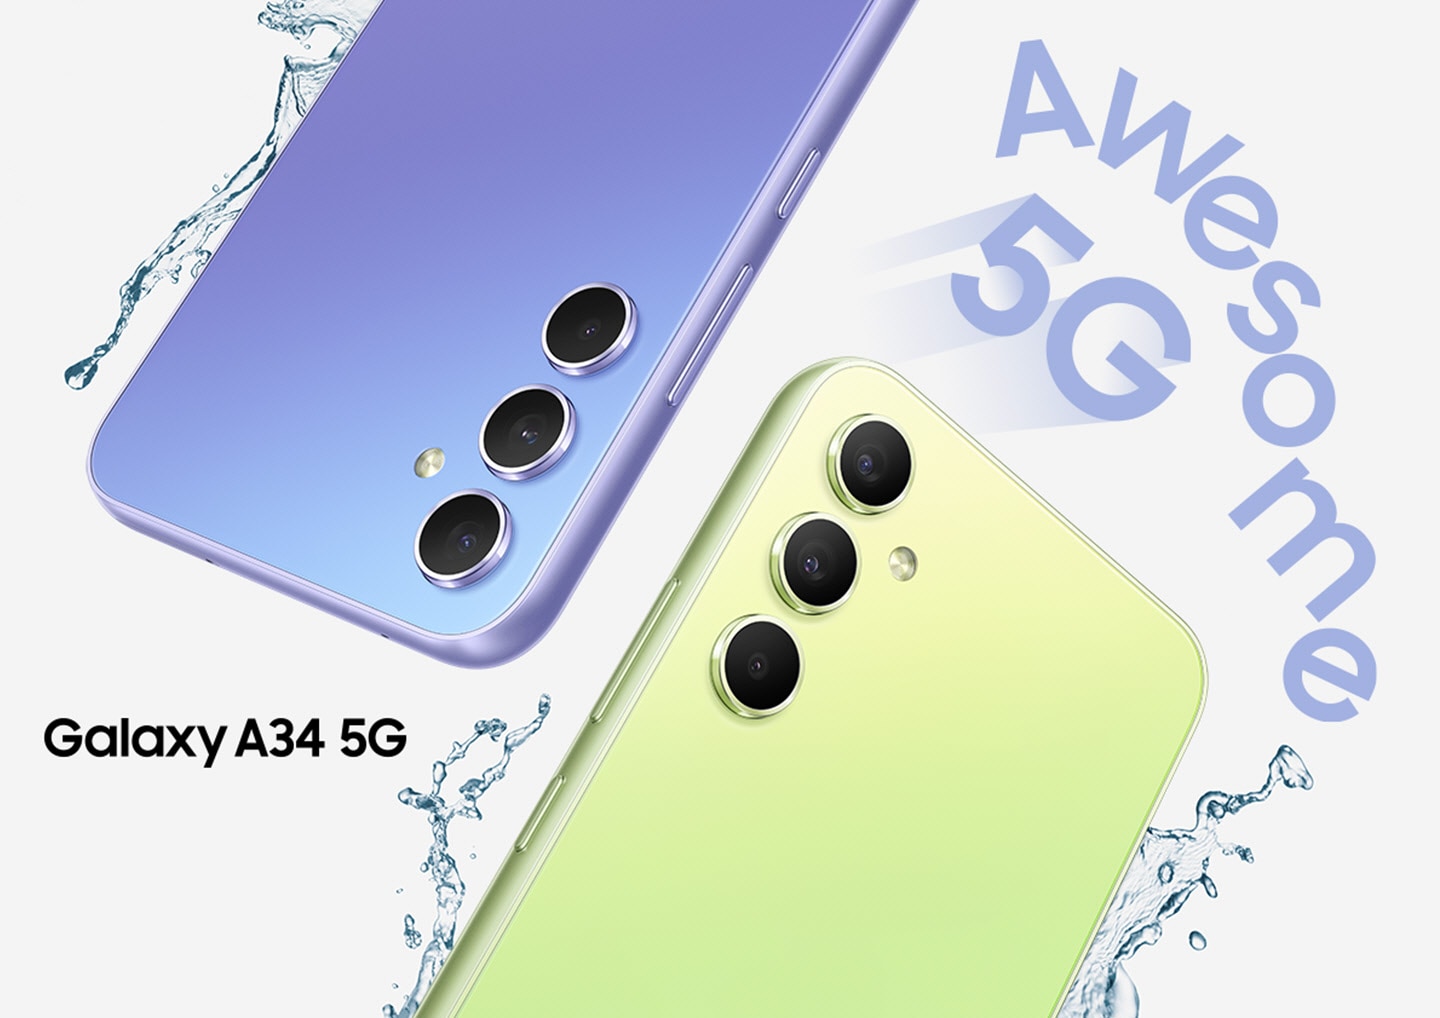 Prikazane so zgornje polovice hrbtnih strani dveh naprav Galaxy A34 5G, ena v svetlo vijolični in druga v svetlo zeleni barvi. Kapljice vode brizgajo okoli naprave 